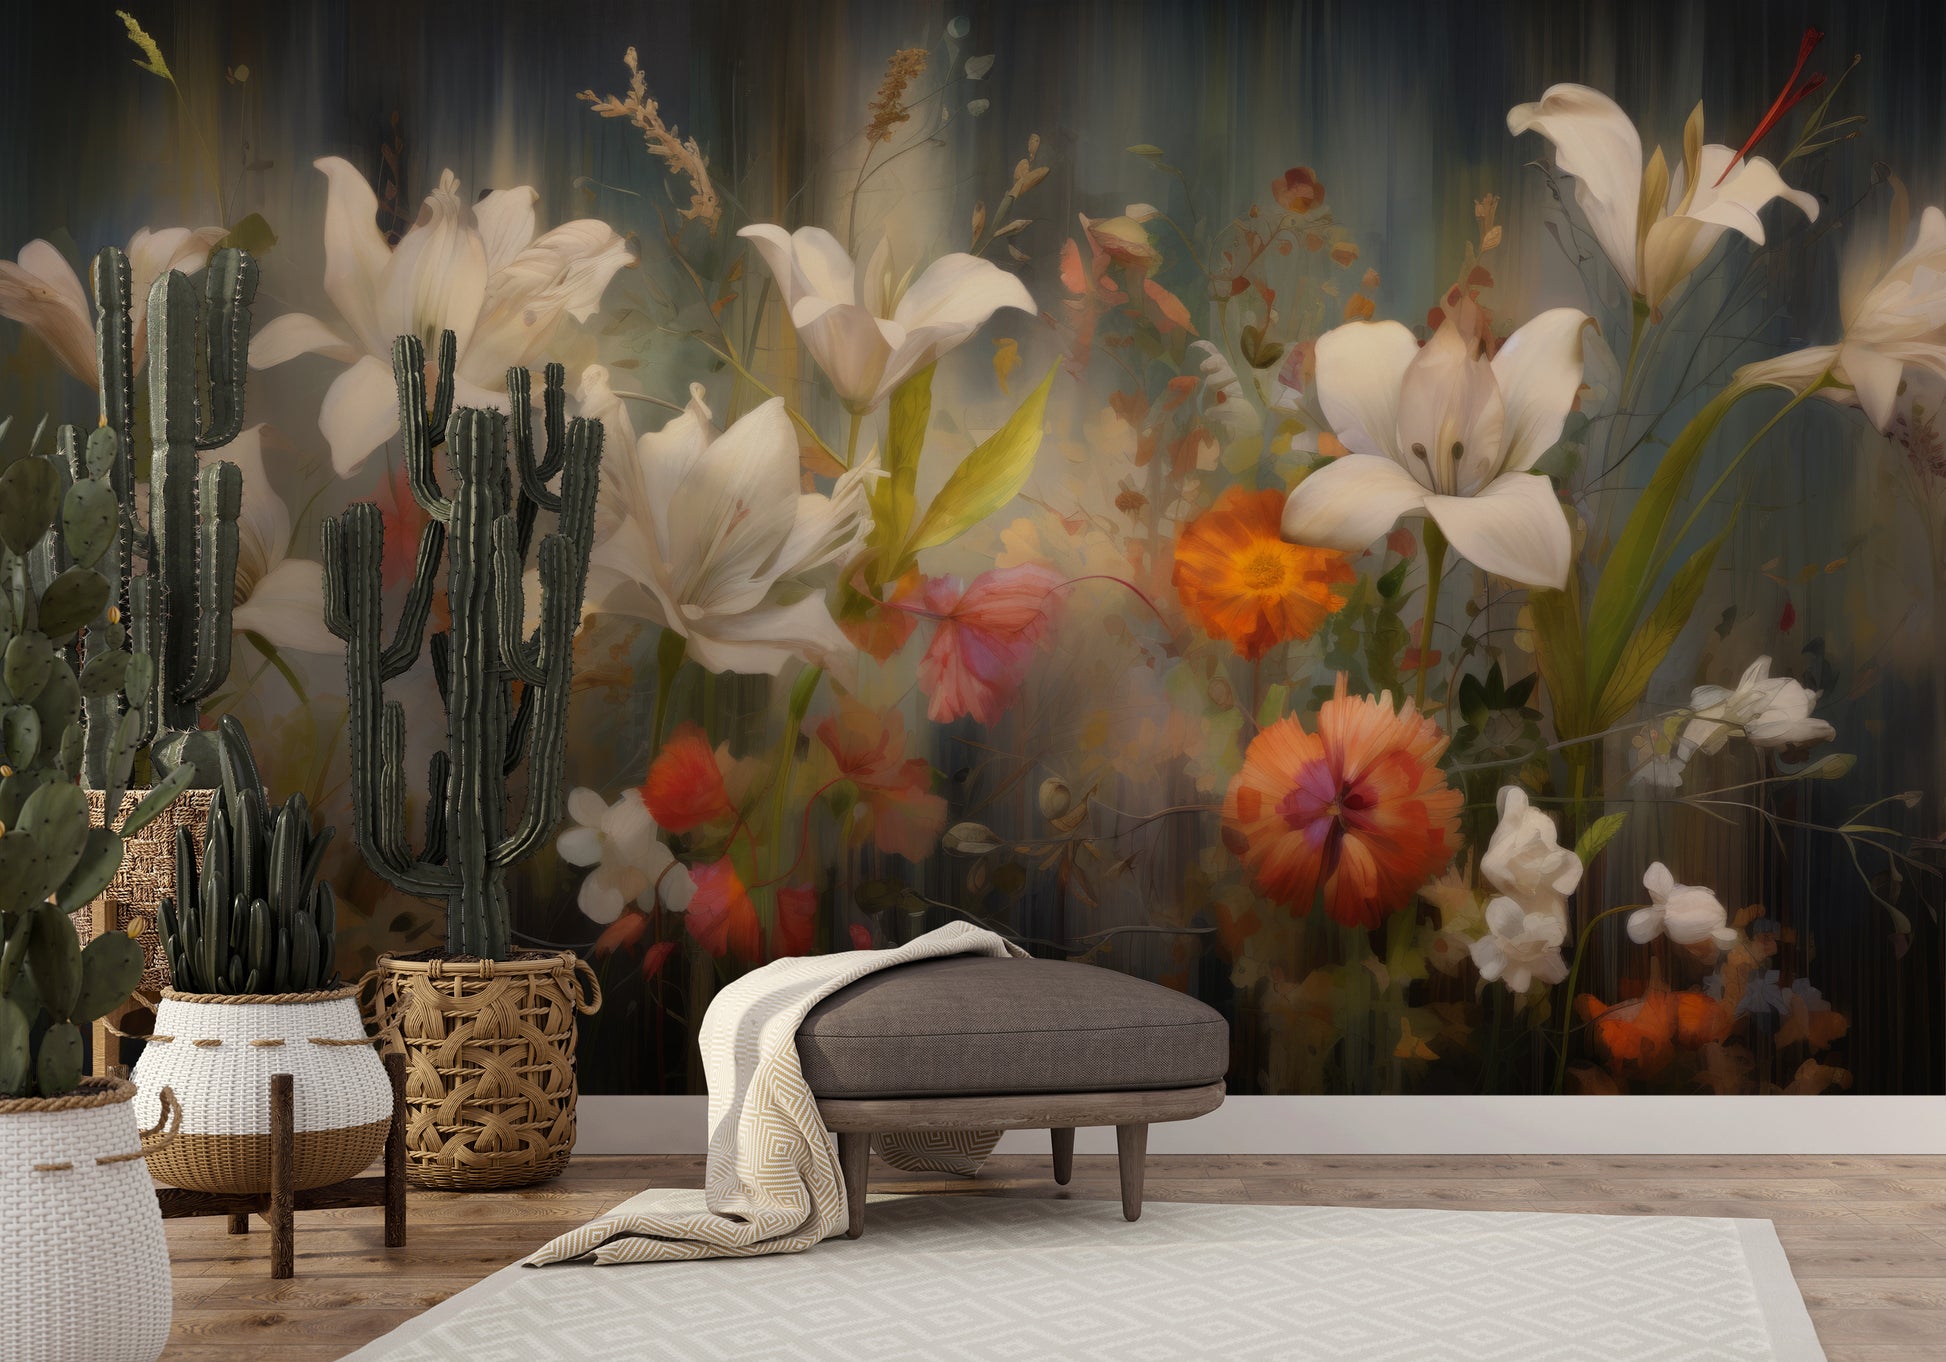 Fototapeta artystyczna o nazwie Vibrant Blossom Symphony pokazana w aranżacji wnętrza.